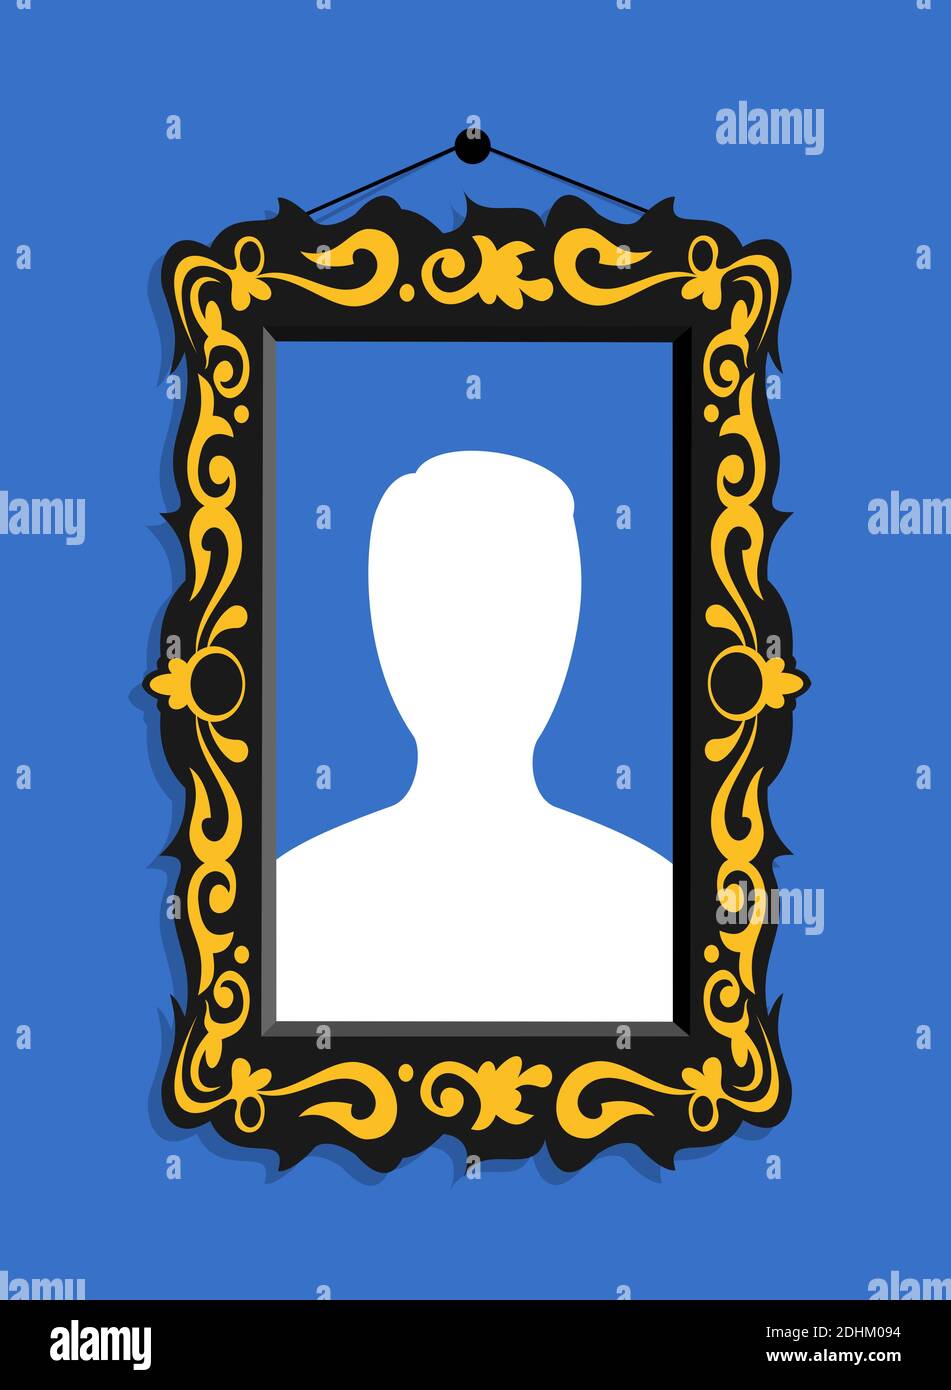 Cadre avec photo de portrait anonyme - profil personnel sur le site social (la couleur et la forme du symbole sont stylisées par rapport au site de réseautage social populaire). Banque D'Images